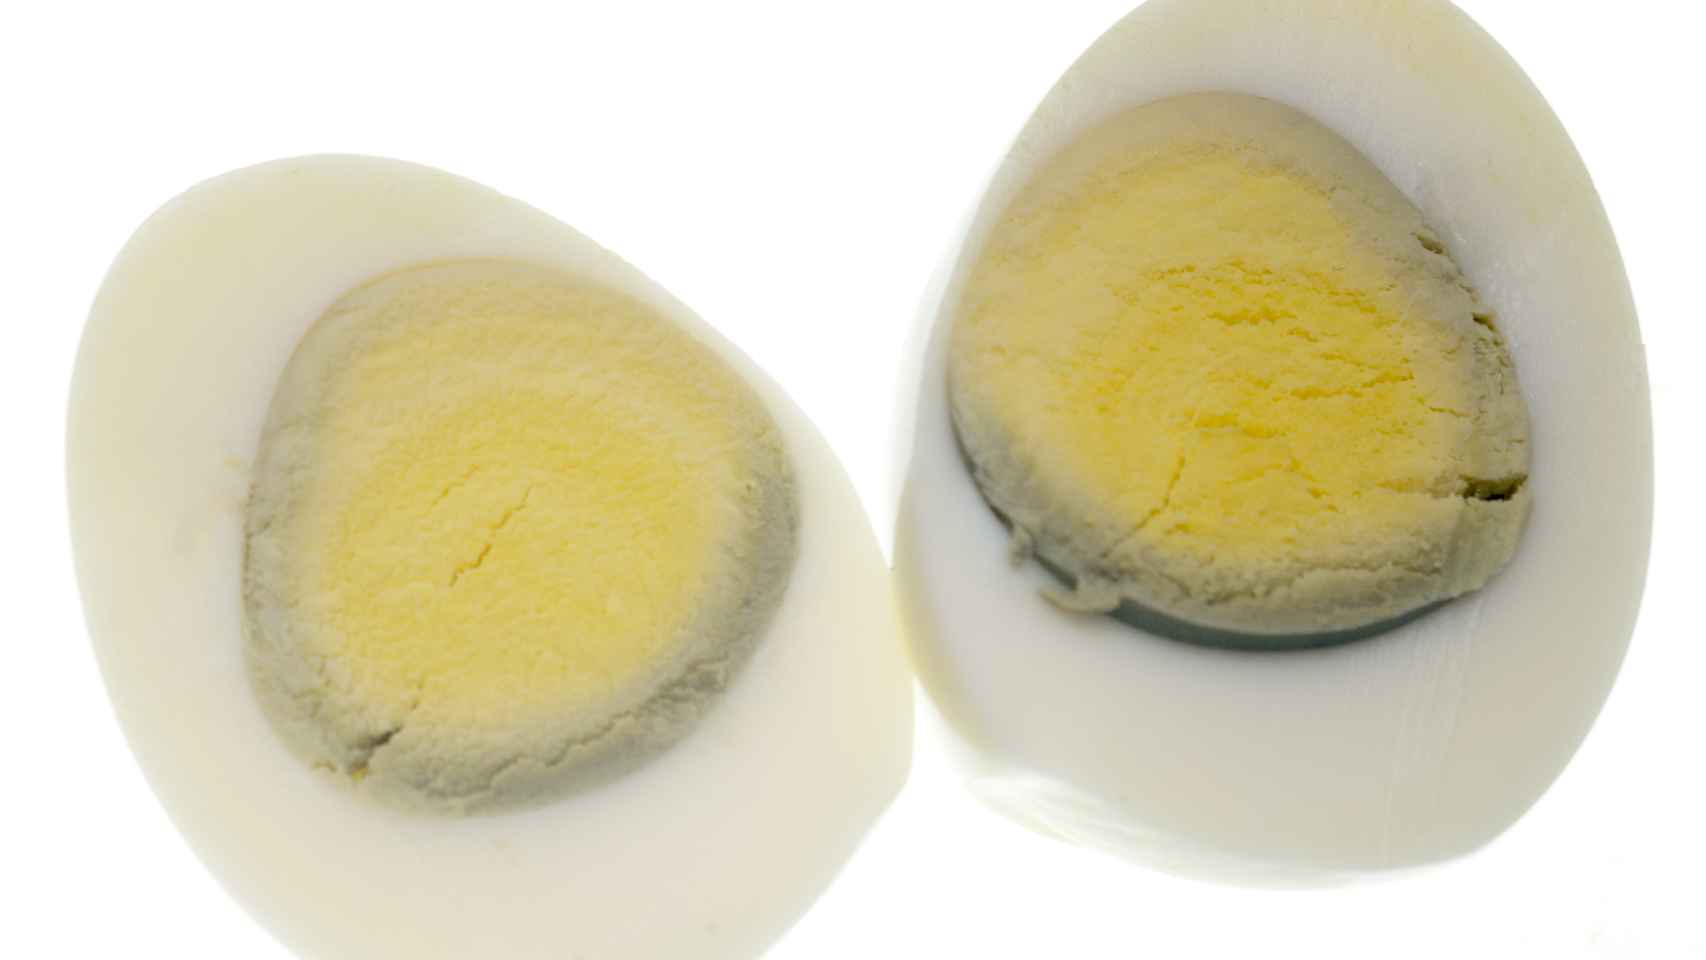 Cómo saber si un huevo está cocido sin abrirlo